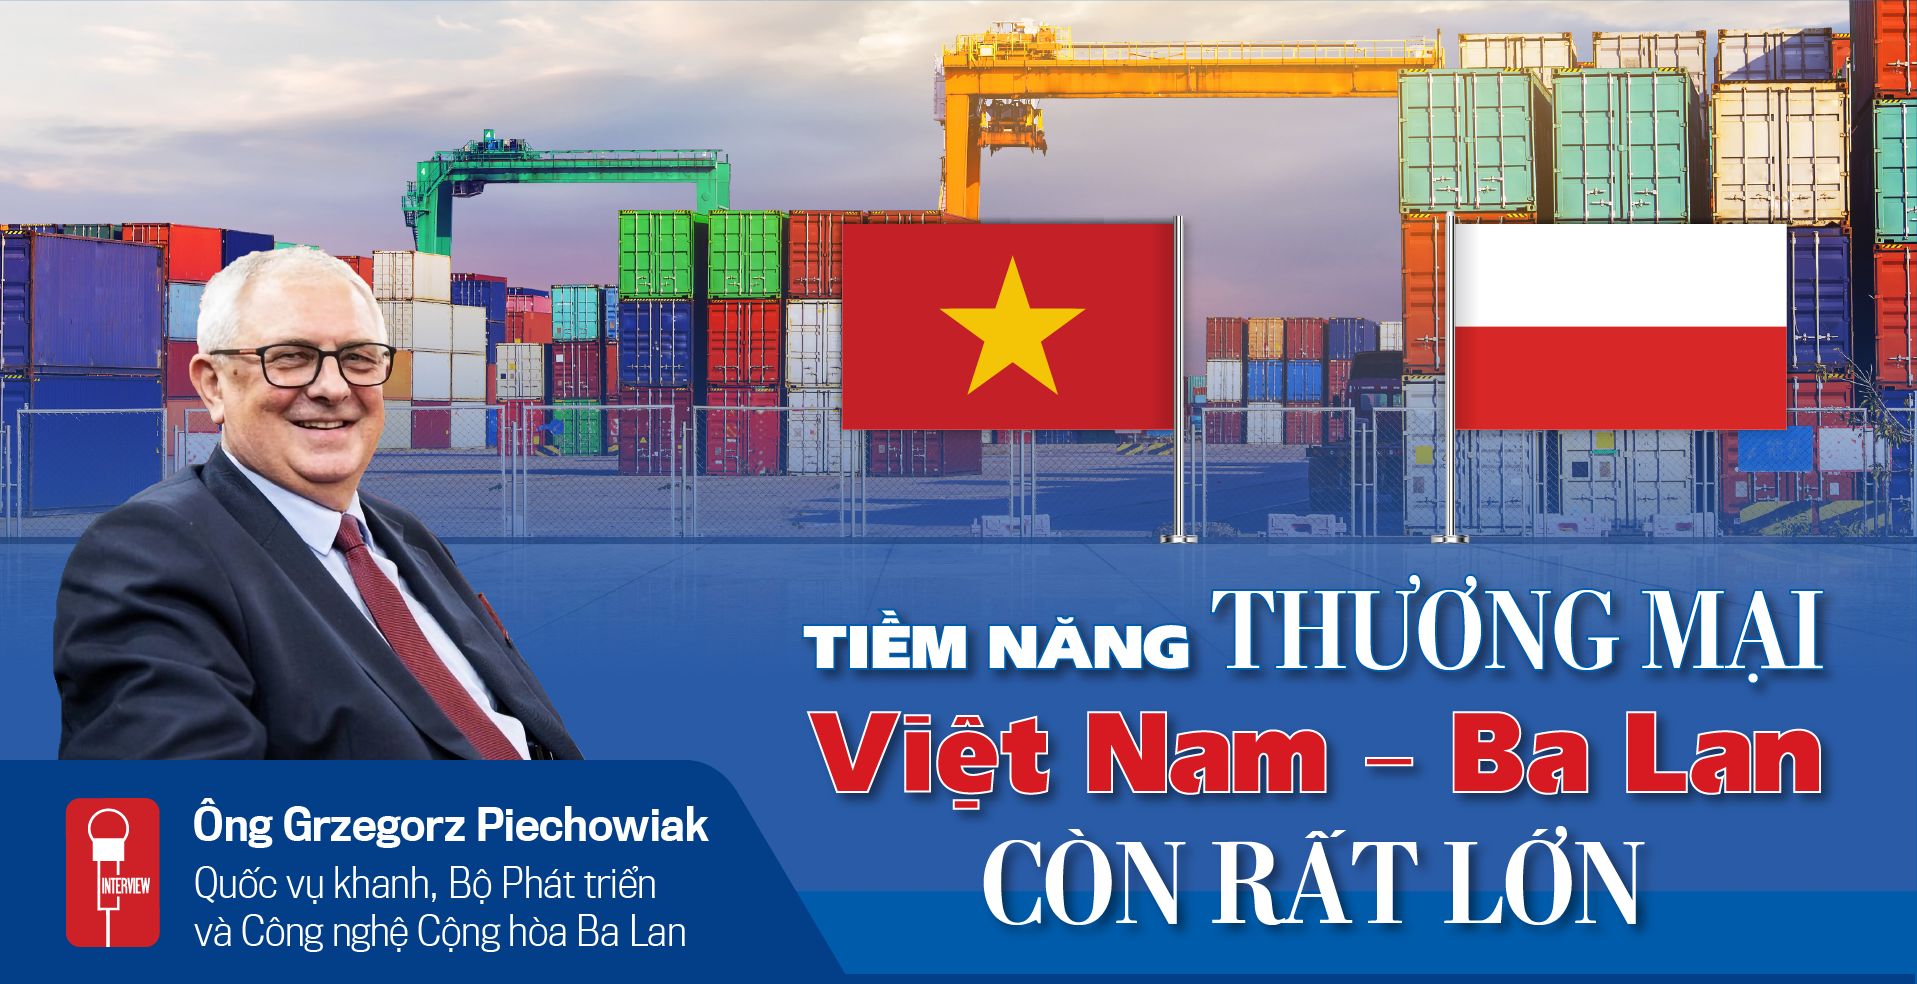 Tiềm năng thương mại Việt Nam - Ba Lan còn rất quan trọng - Ảnh 1